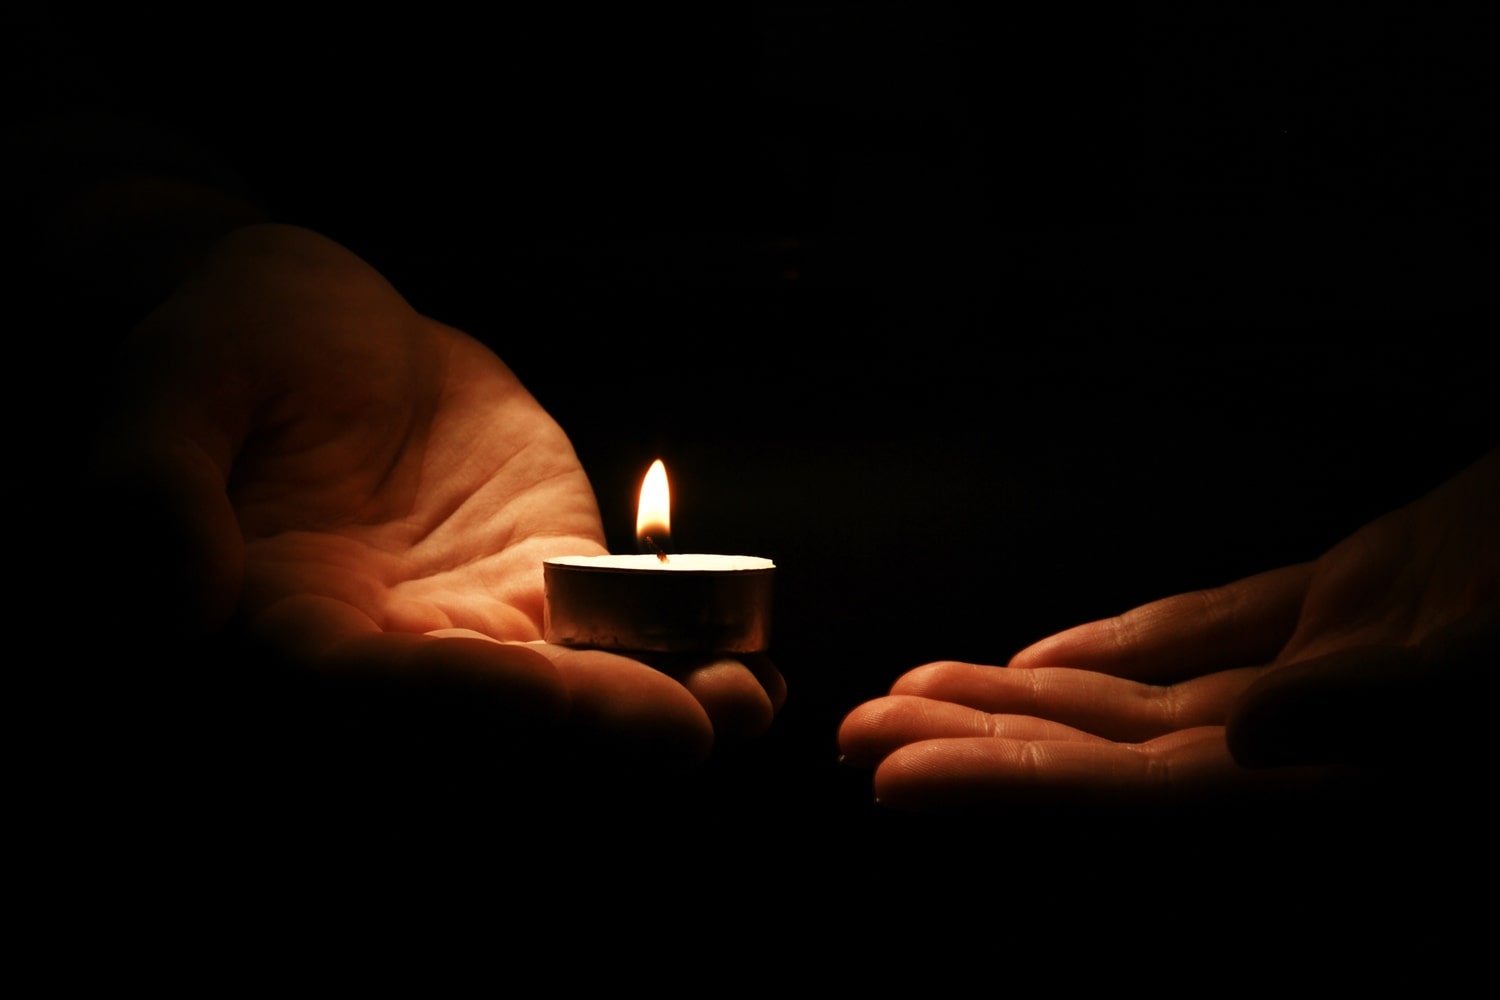 Mała świeczka trzymana w dłoniach na tle ciemnego tła